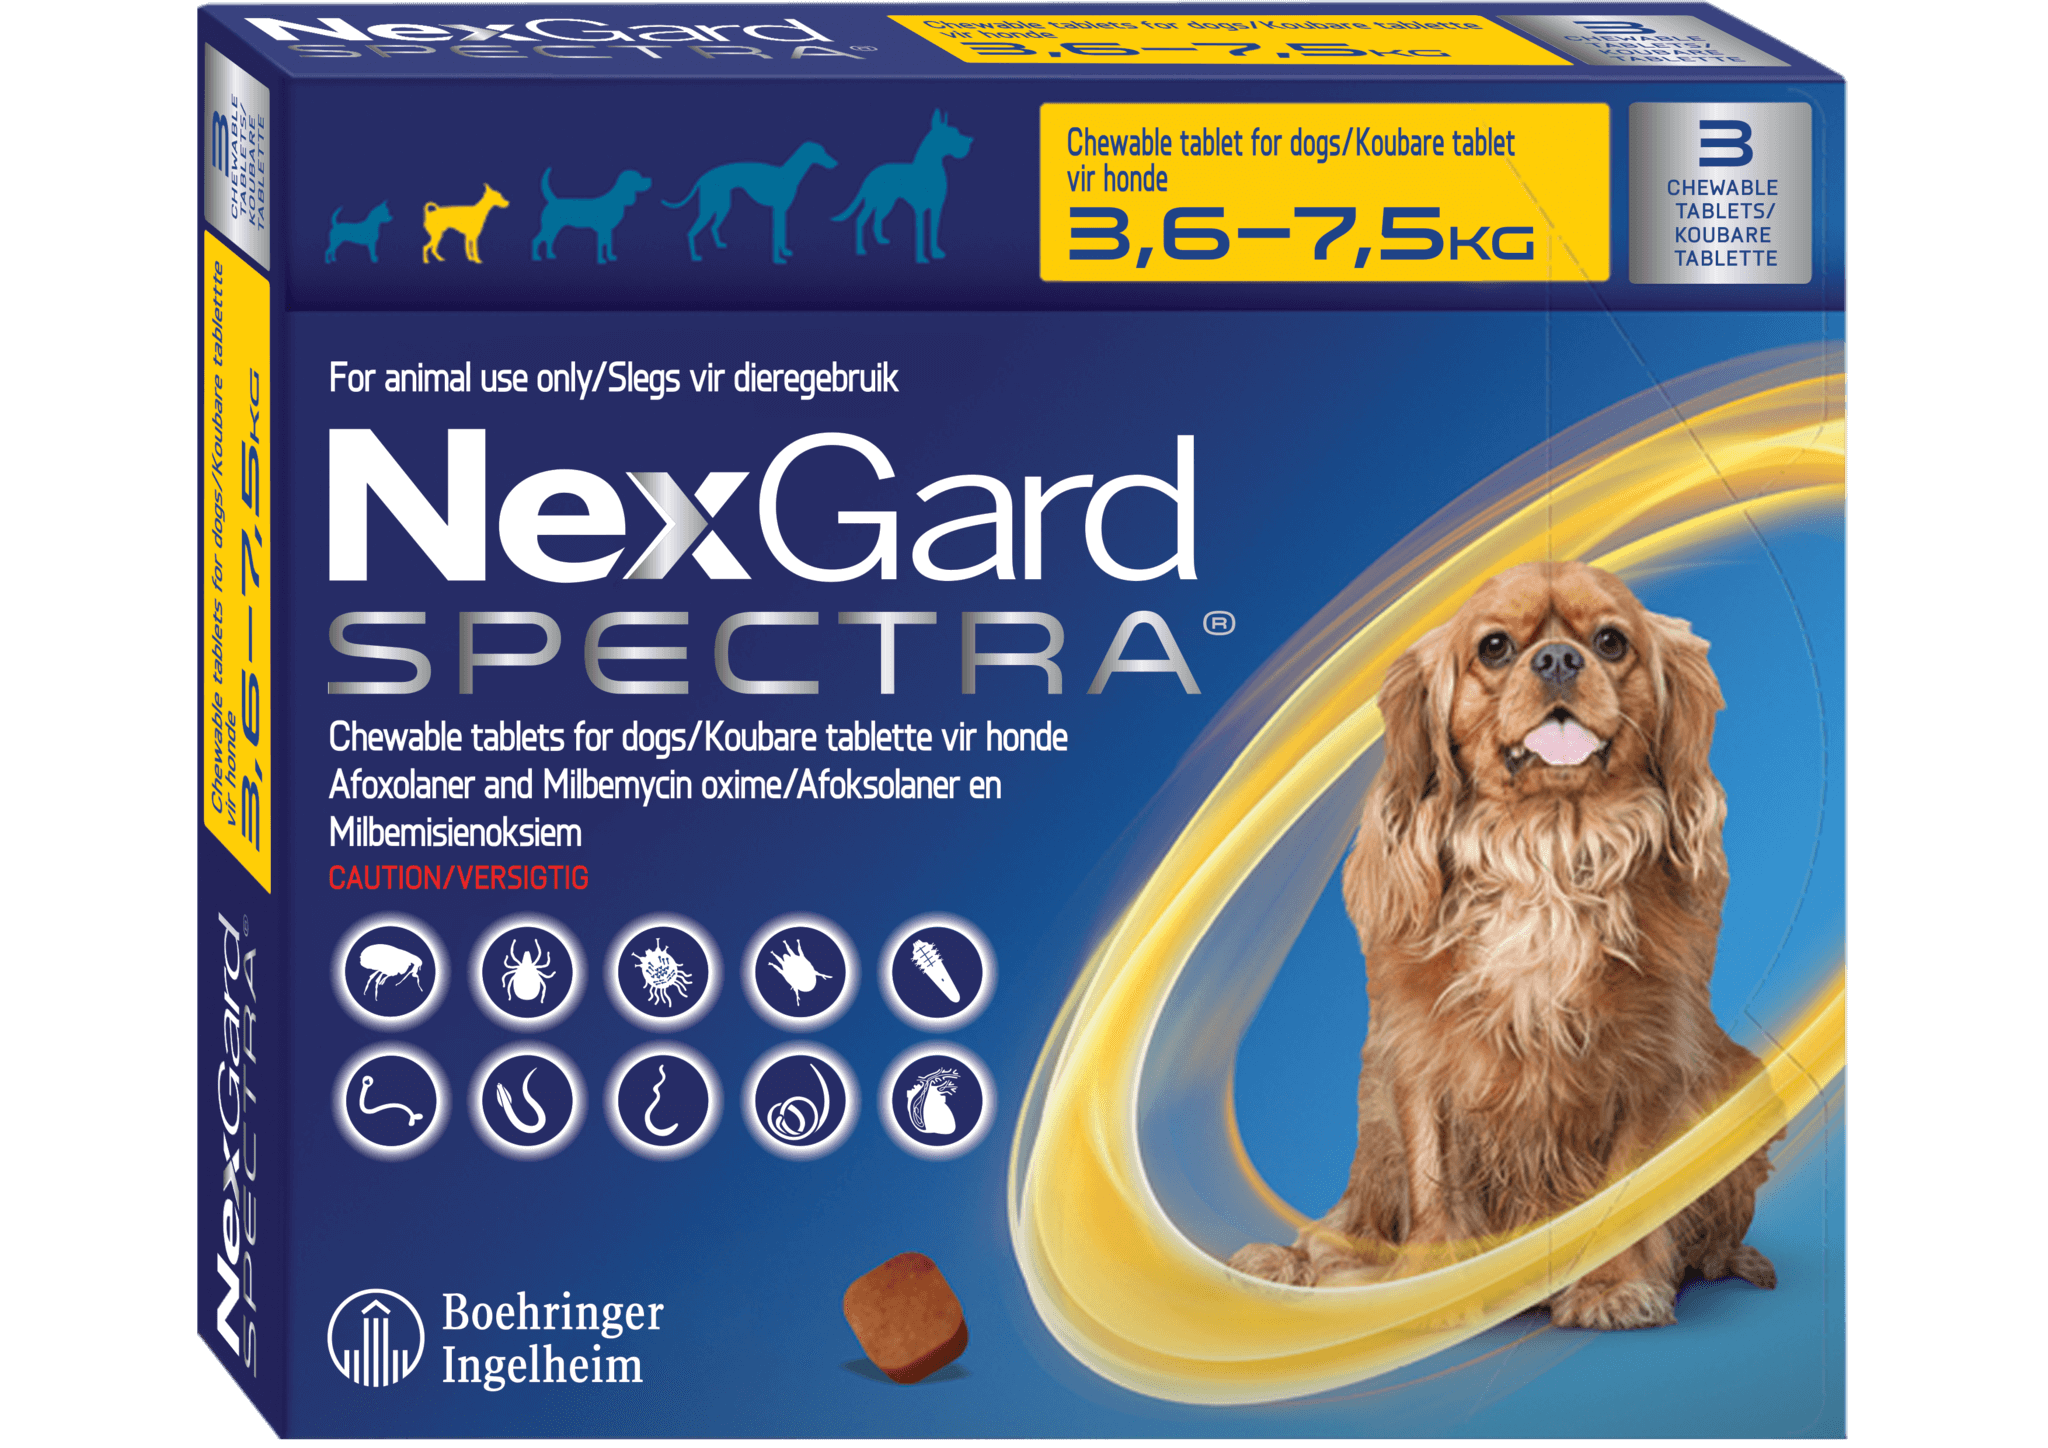 Нексгард для собак 5 10. НЕКСГАРД спектра для собак 2-3.5 кг. НЕКСГАРД спектра для собак 3,5-7. НЕКСГАРД для собак 7.5. NEXGARD Spectra для собак.